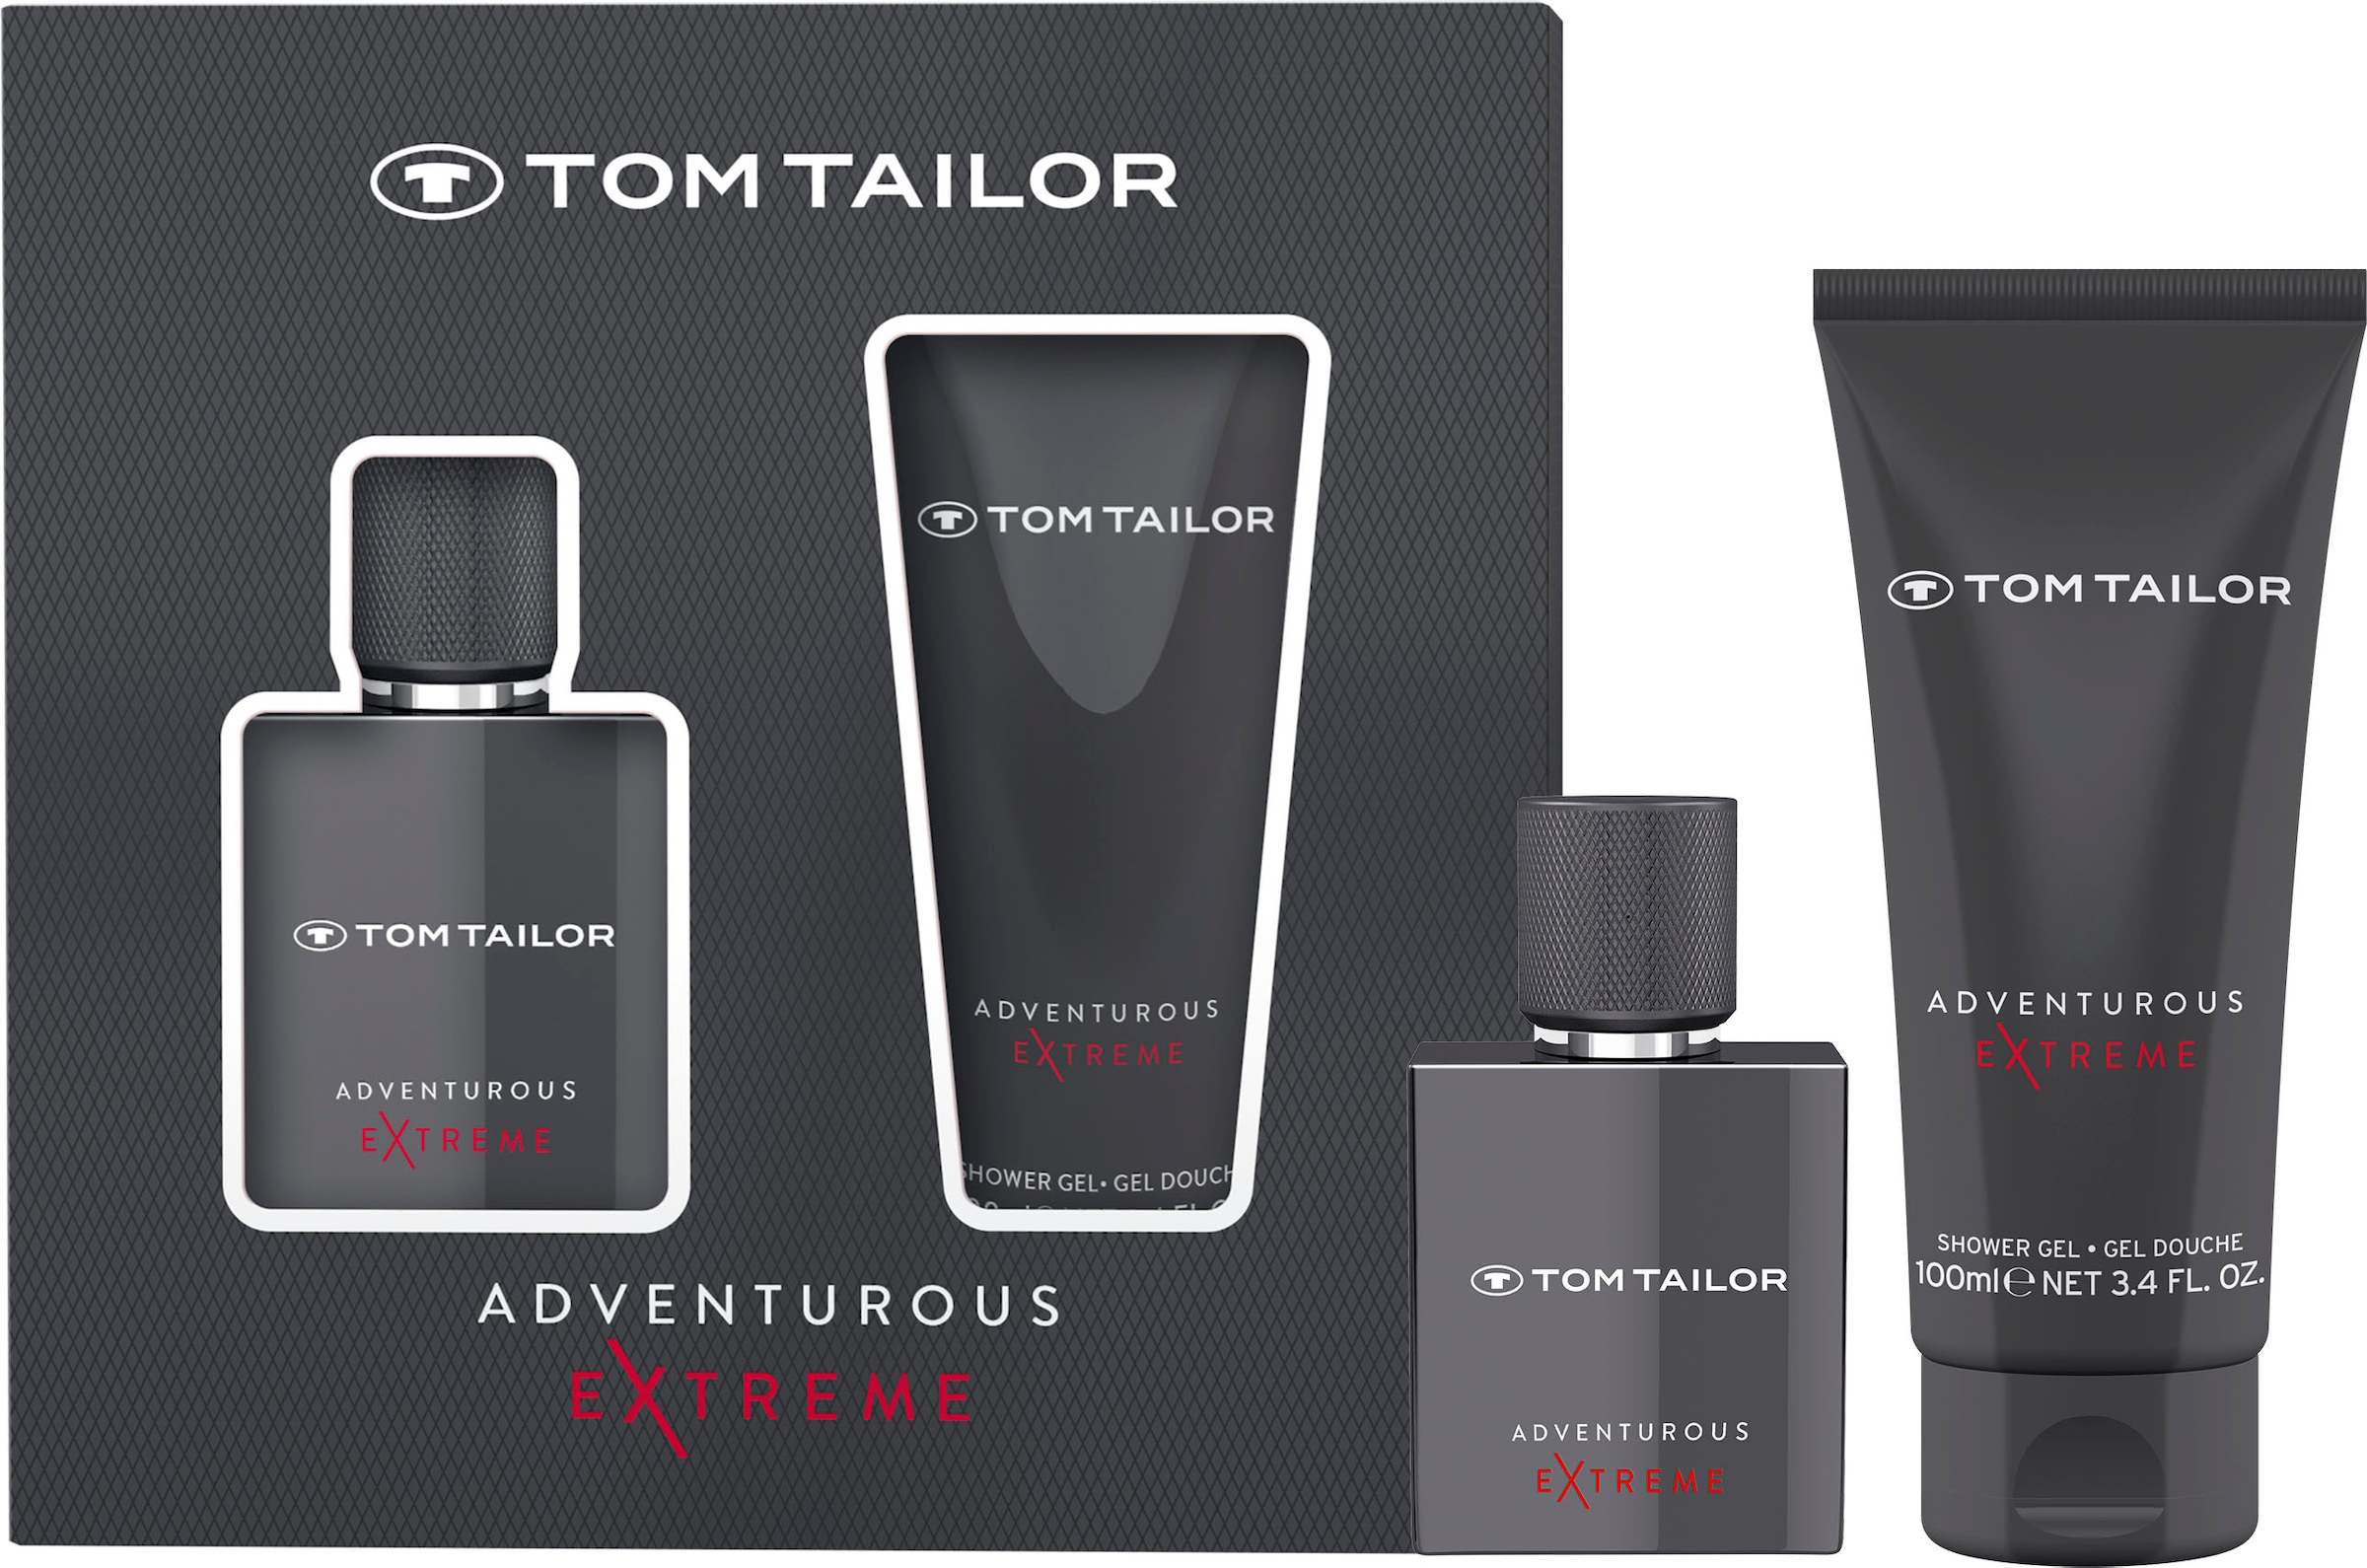 him TAILOR Extreme Toilette »TOM + 100ml«, for TAILOR Eau (2 BAUR GP TOM | de 30ml SG EdT tlg.) Adventurous